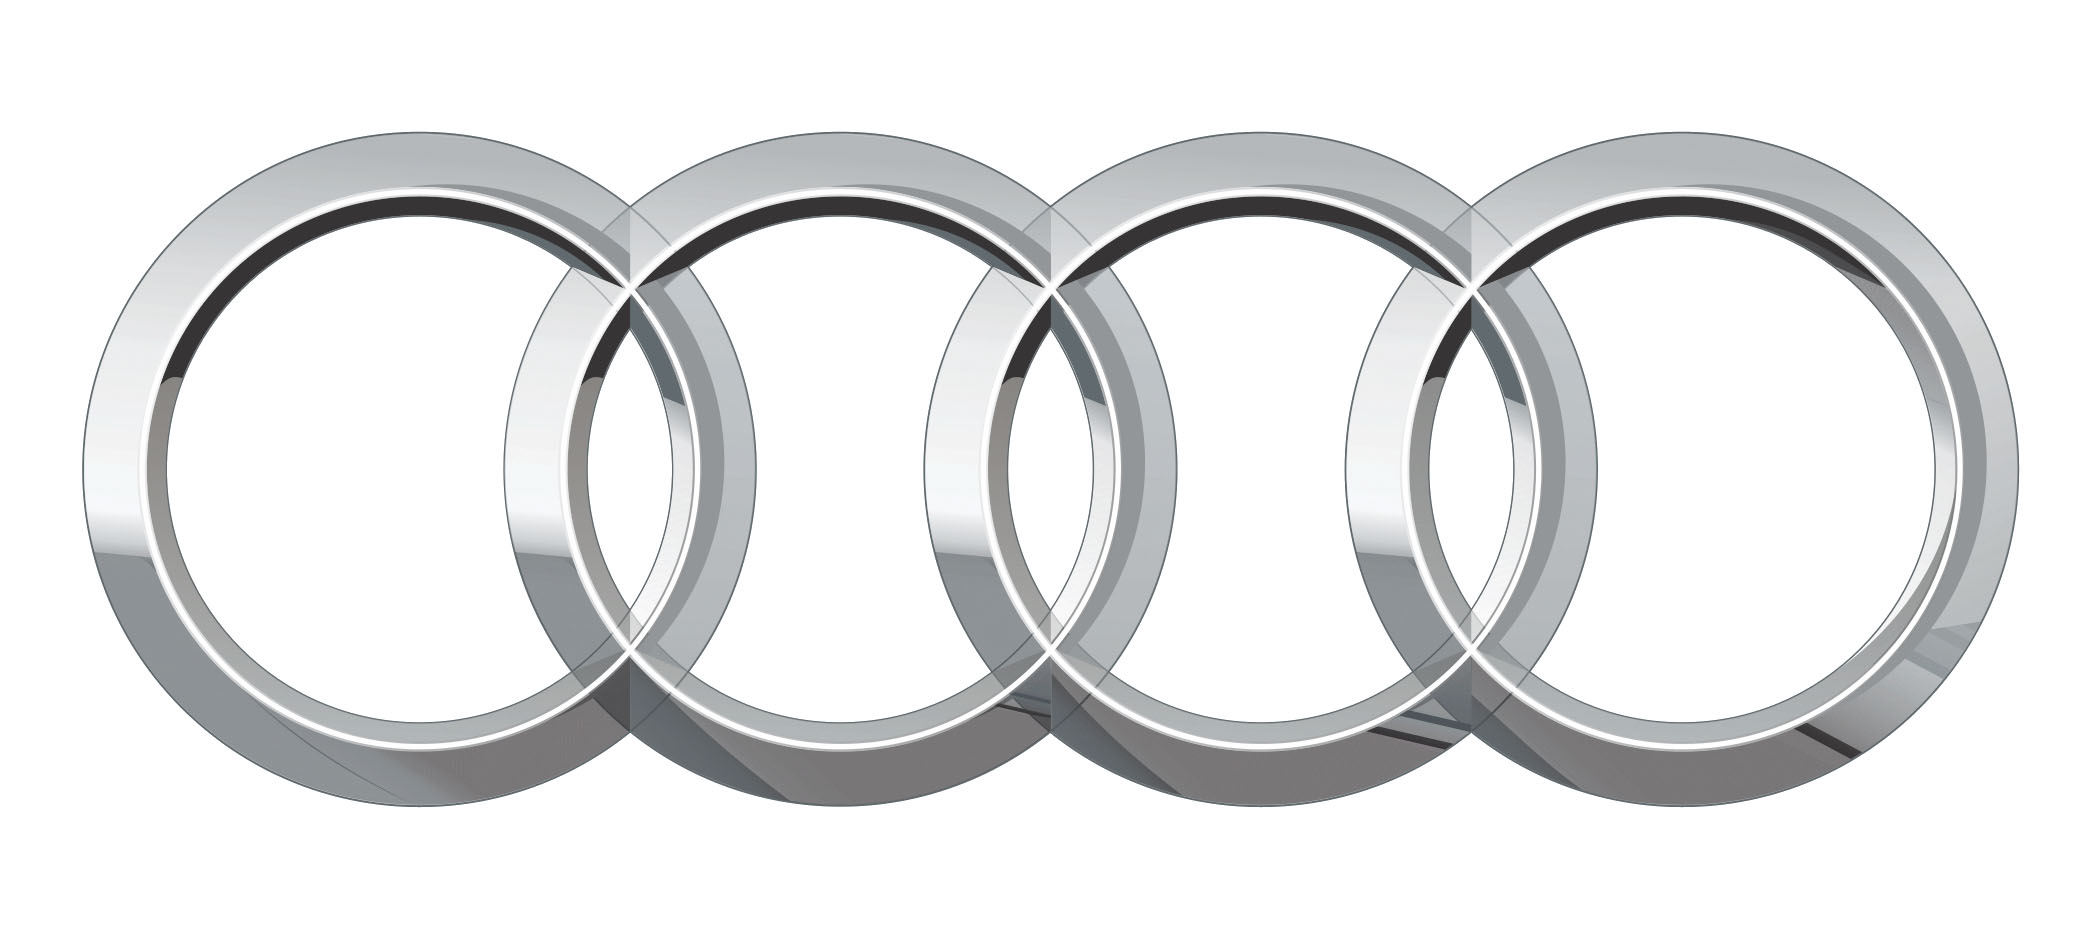 Логотип AUDI